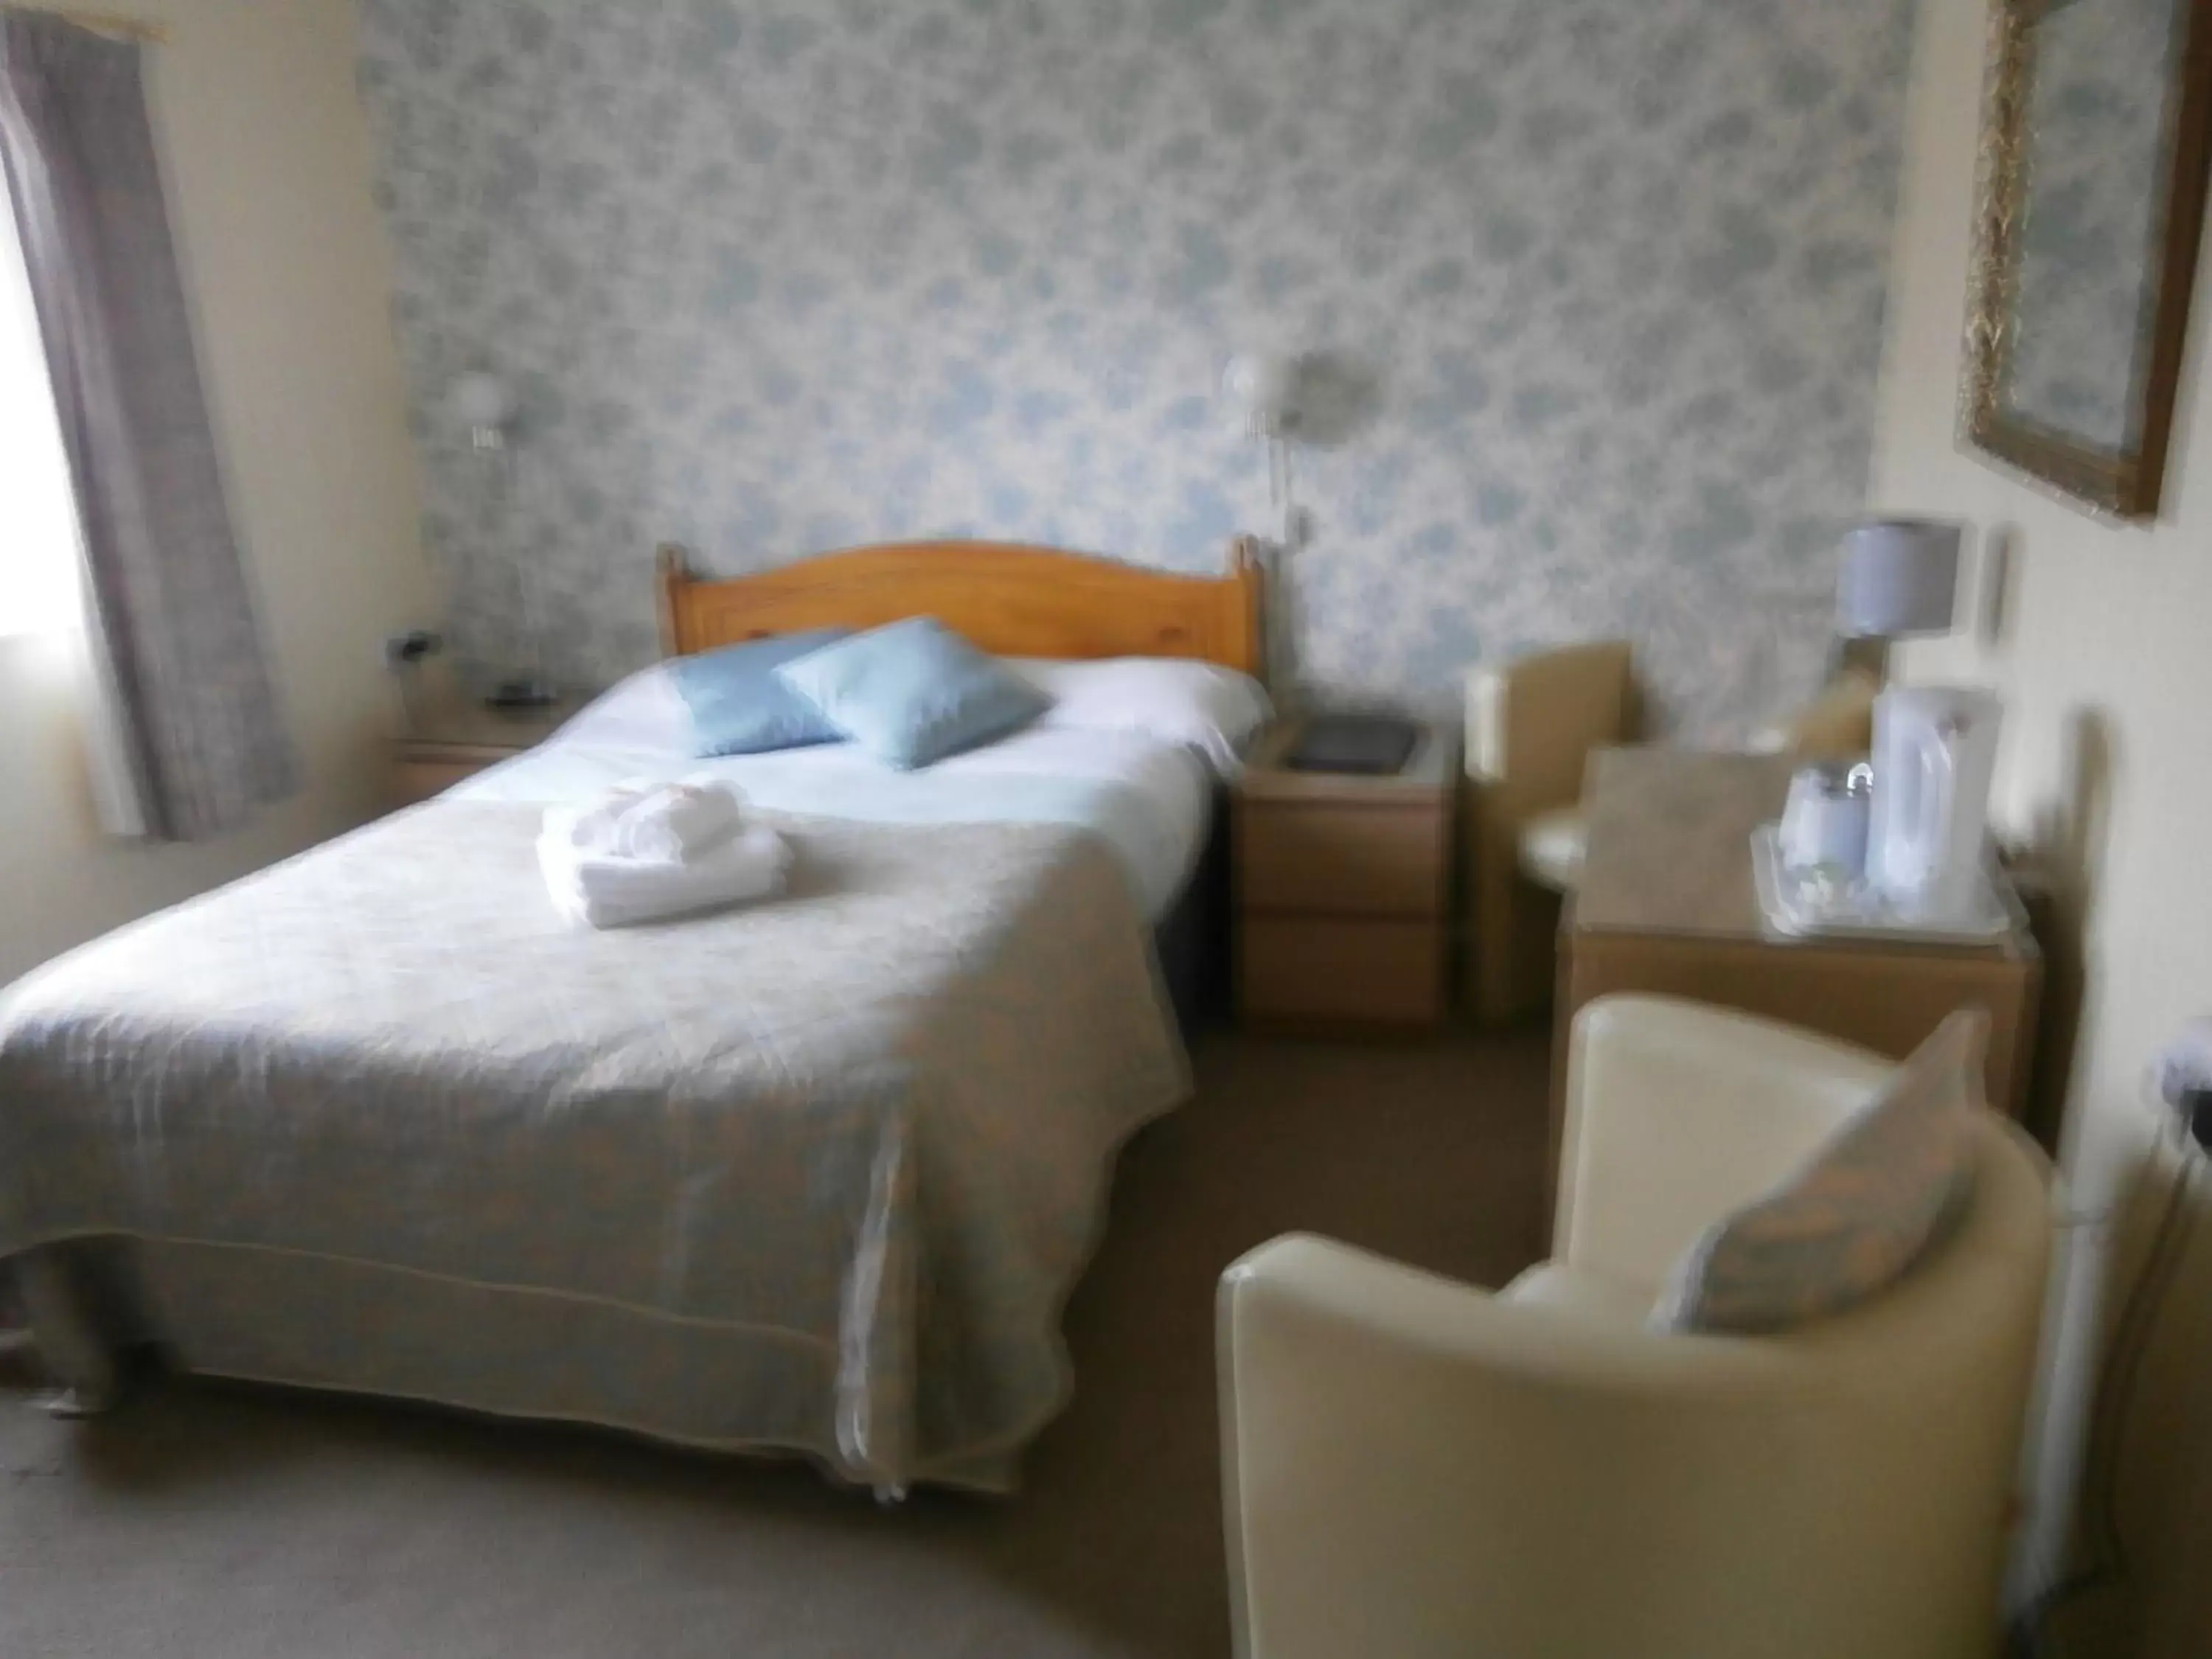 Bedroom in Dorset Hotel, Isle of Wight